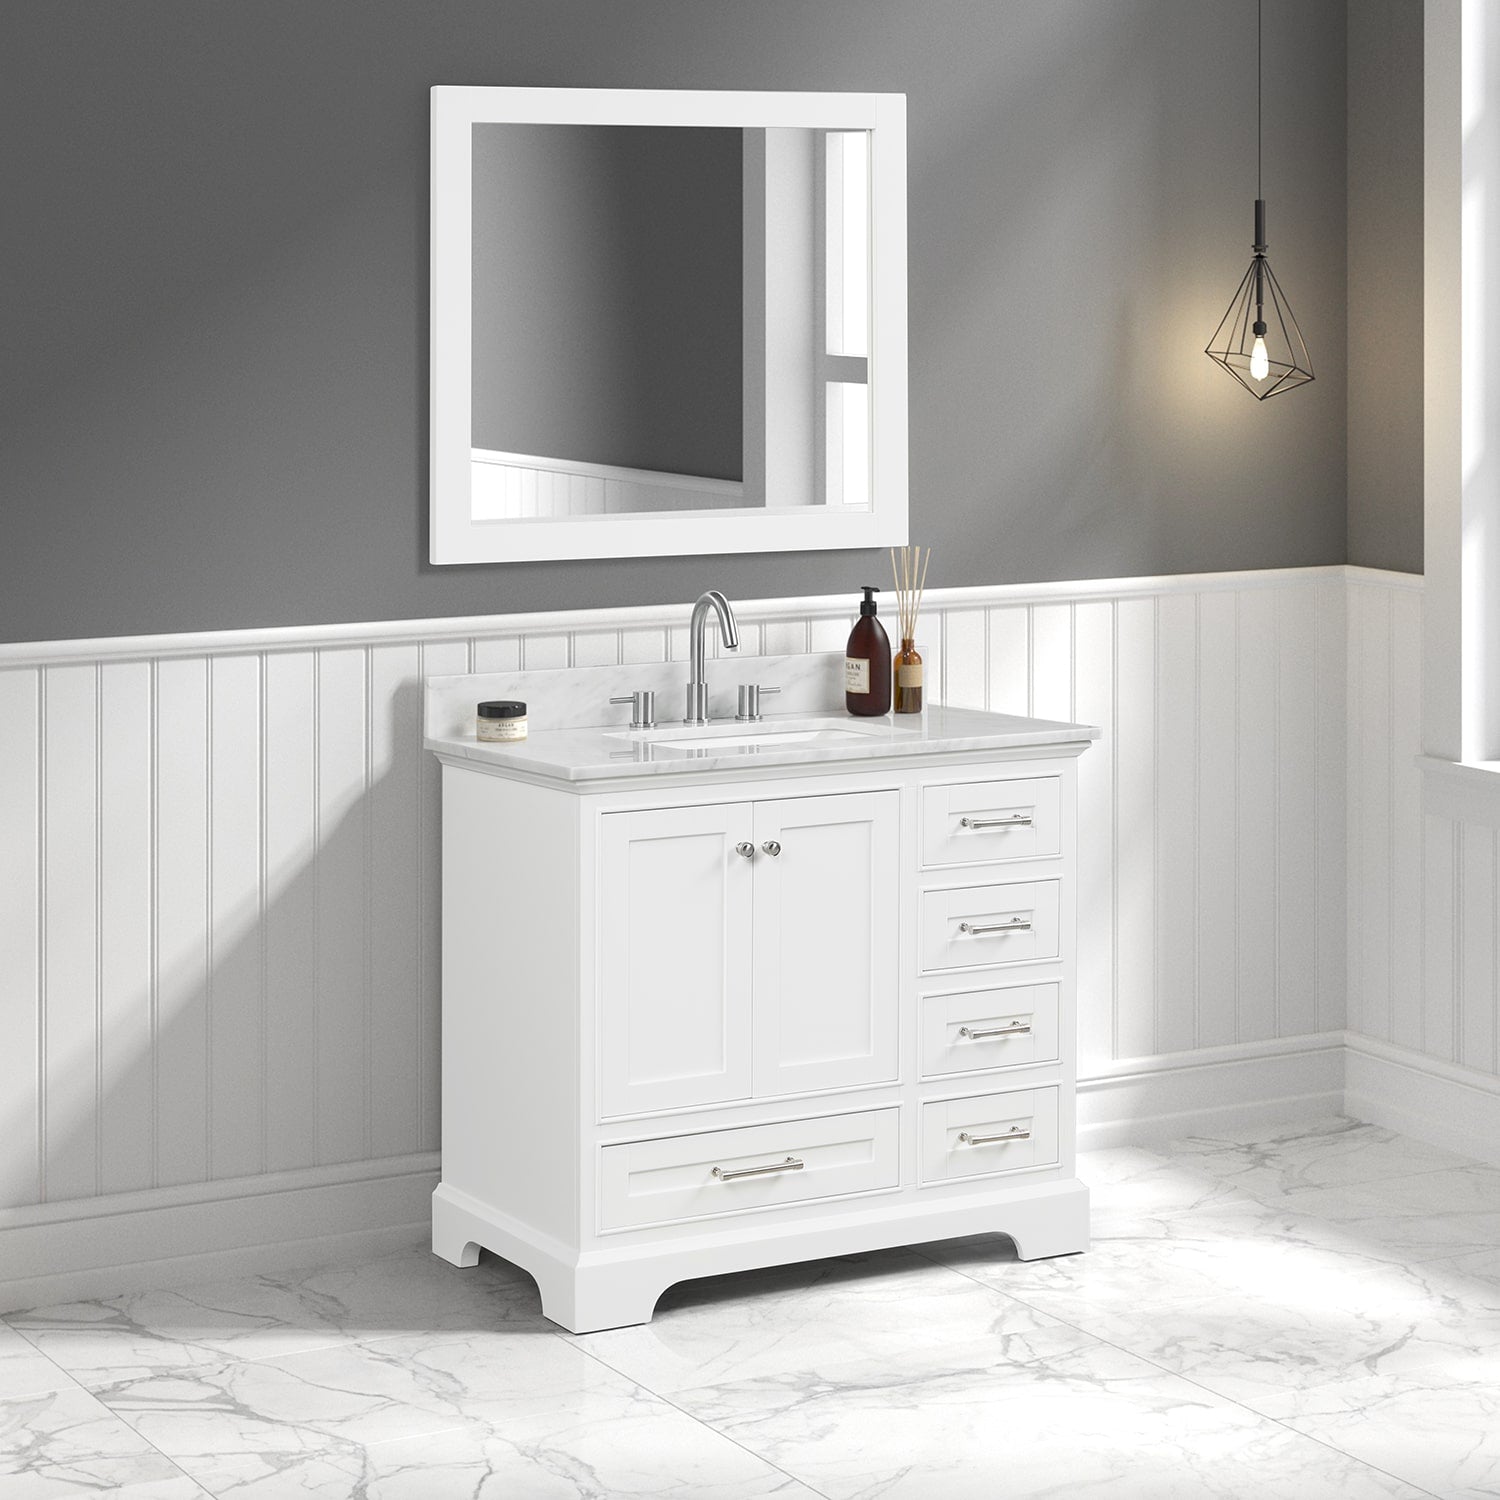 Copenhagen 36″ Bathroom Vanity with Marble Countertop and Ceramic Sink - Contemporary Bathroom Vanity